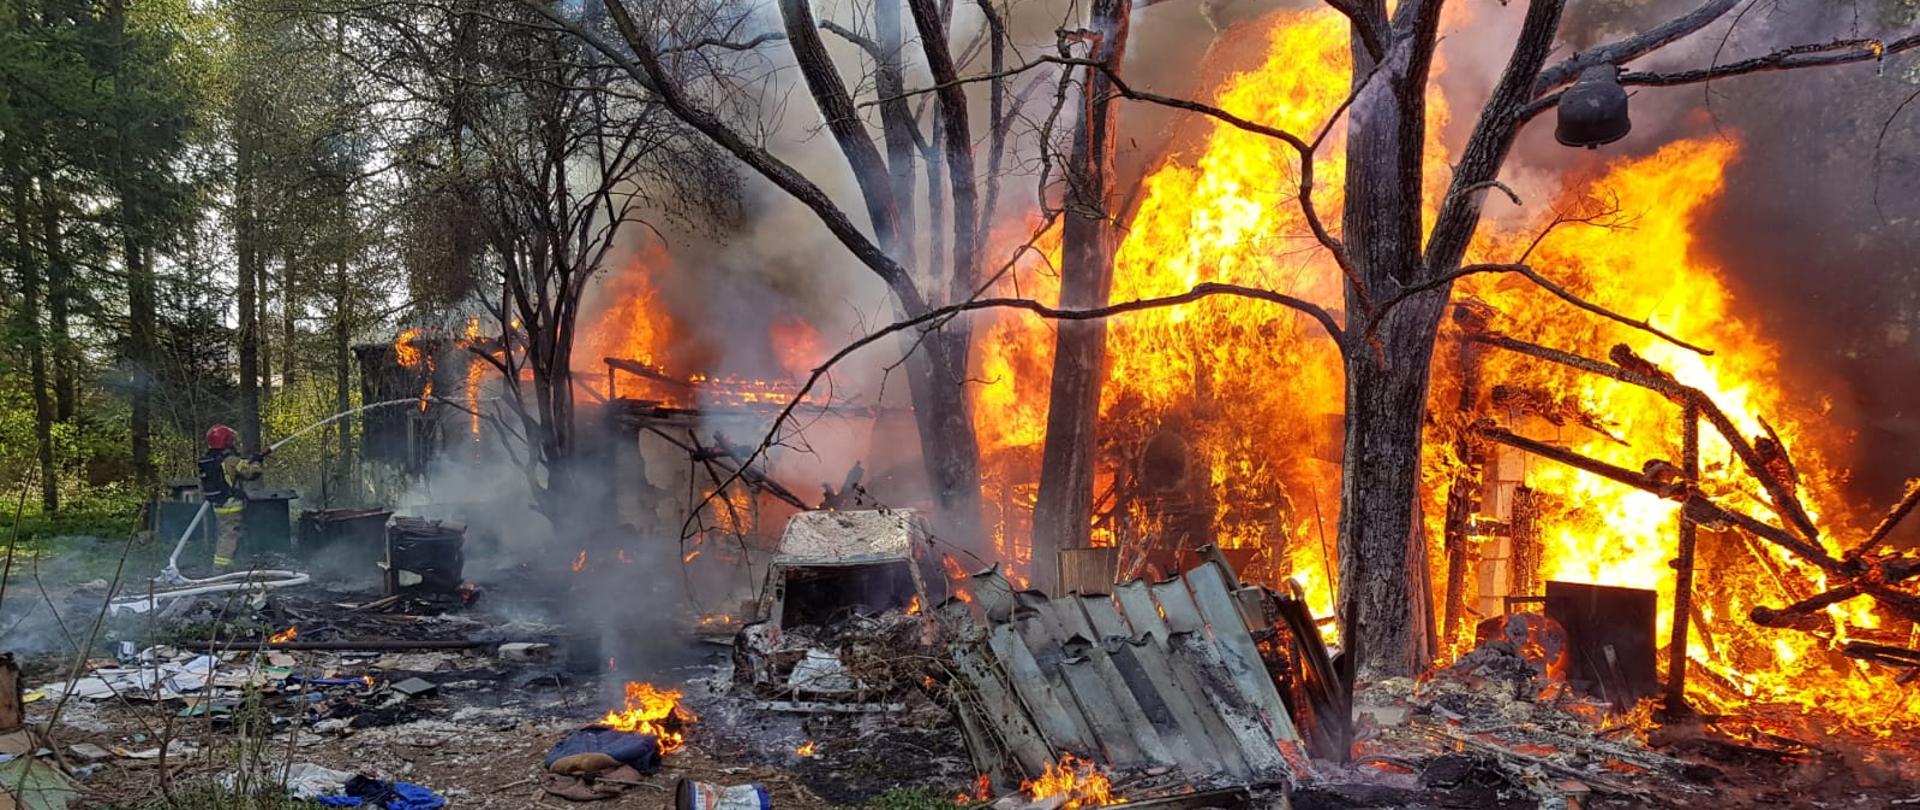 zdjęcie przedstawia pożar budynku drewnianego